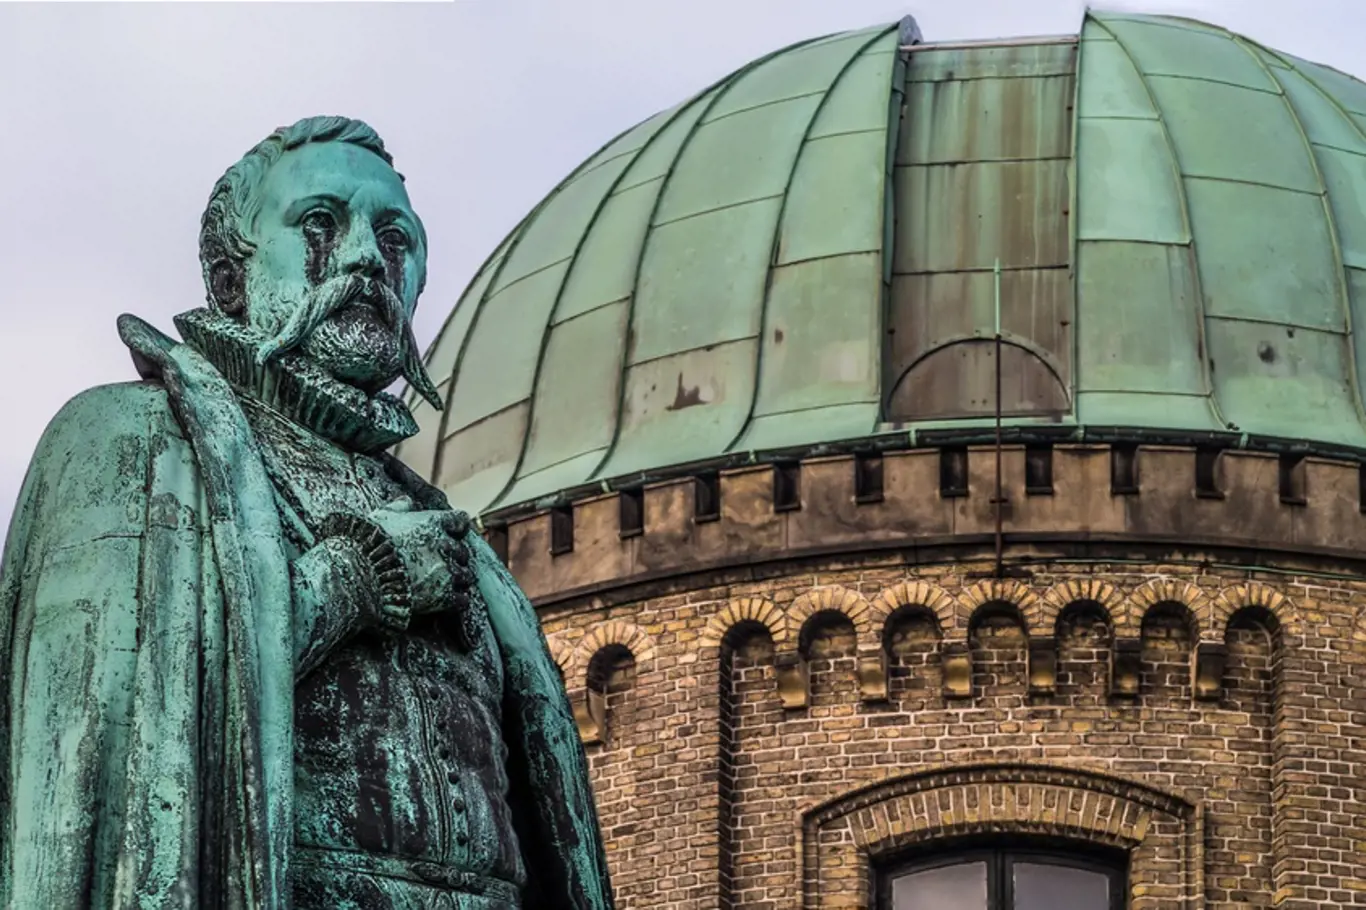 Socha Tychona Brahe před zastřešenou observatoří vedle zámku Rosenborg v dánské Kodani